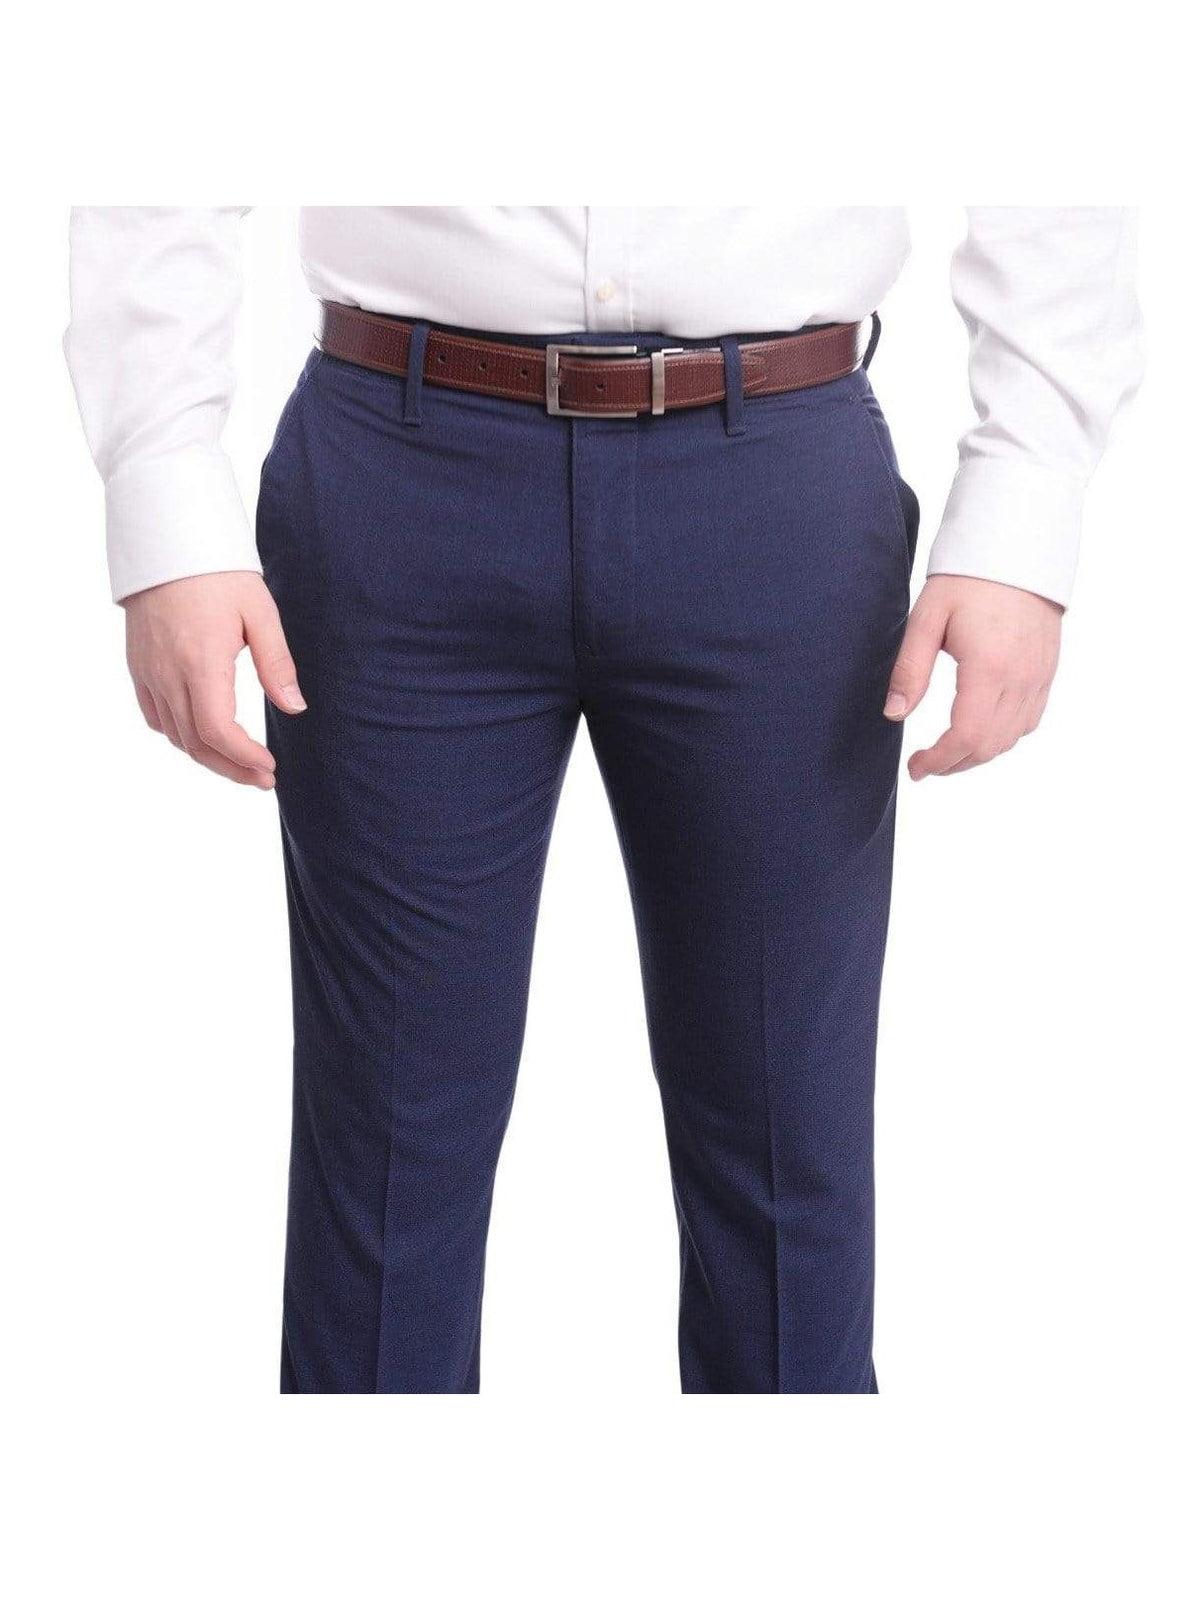 The Suit Depot PANTS Mens Solid Black Slim Fit Flat Front 4 Way Stretch Dress Pants